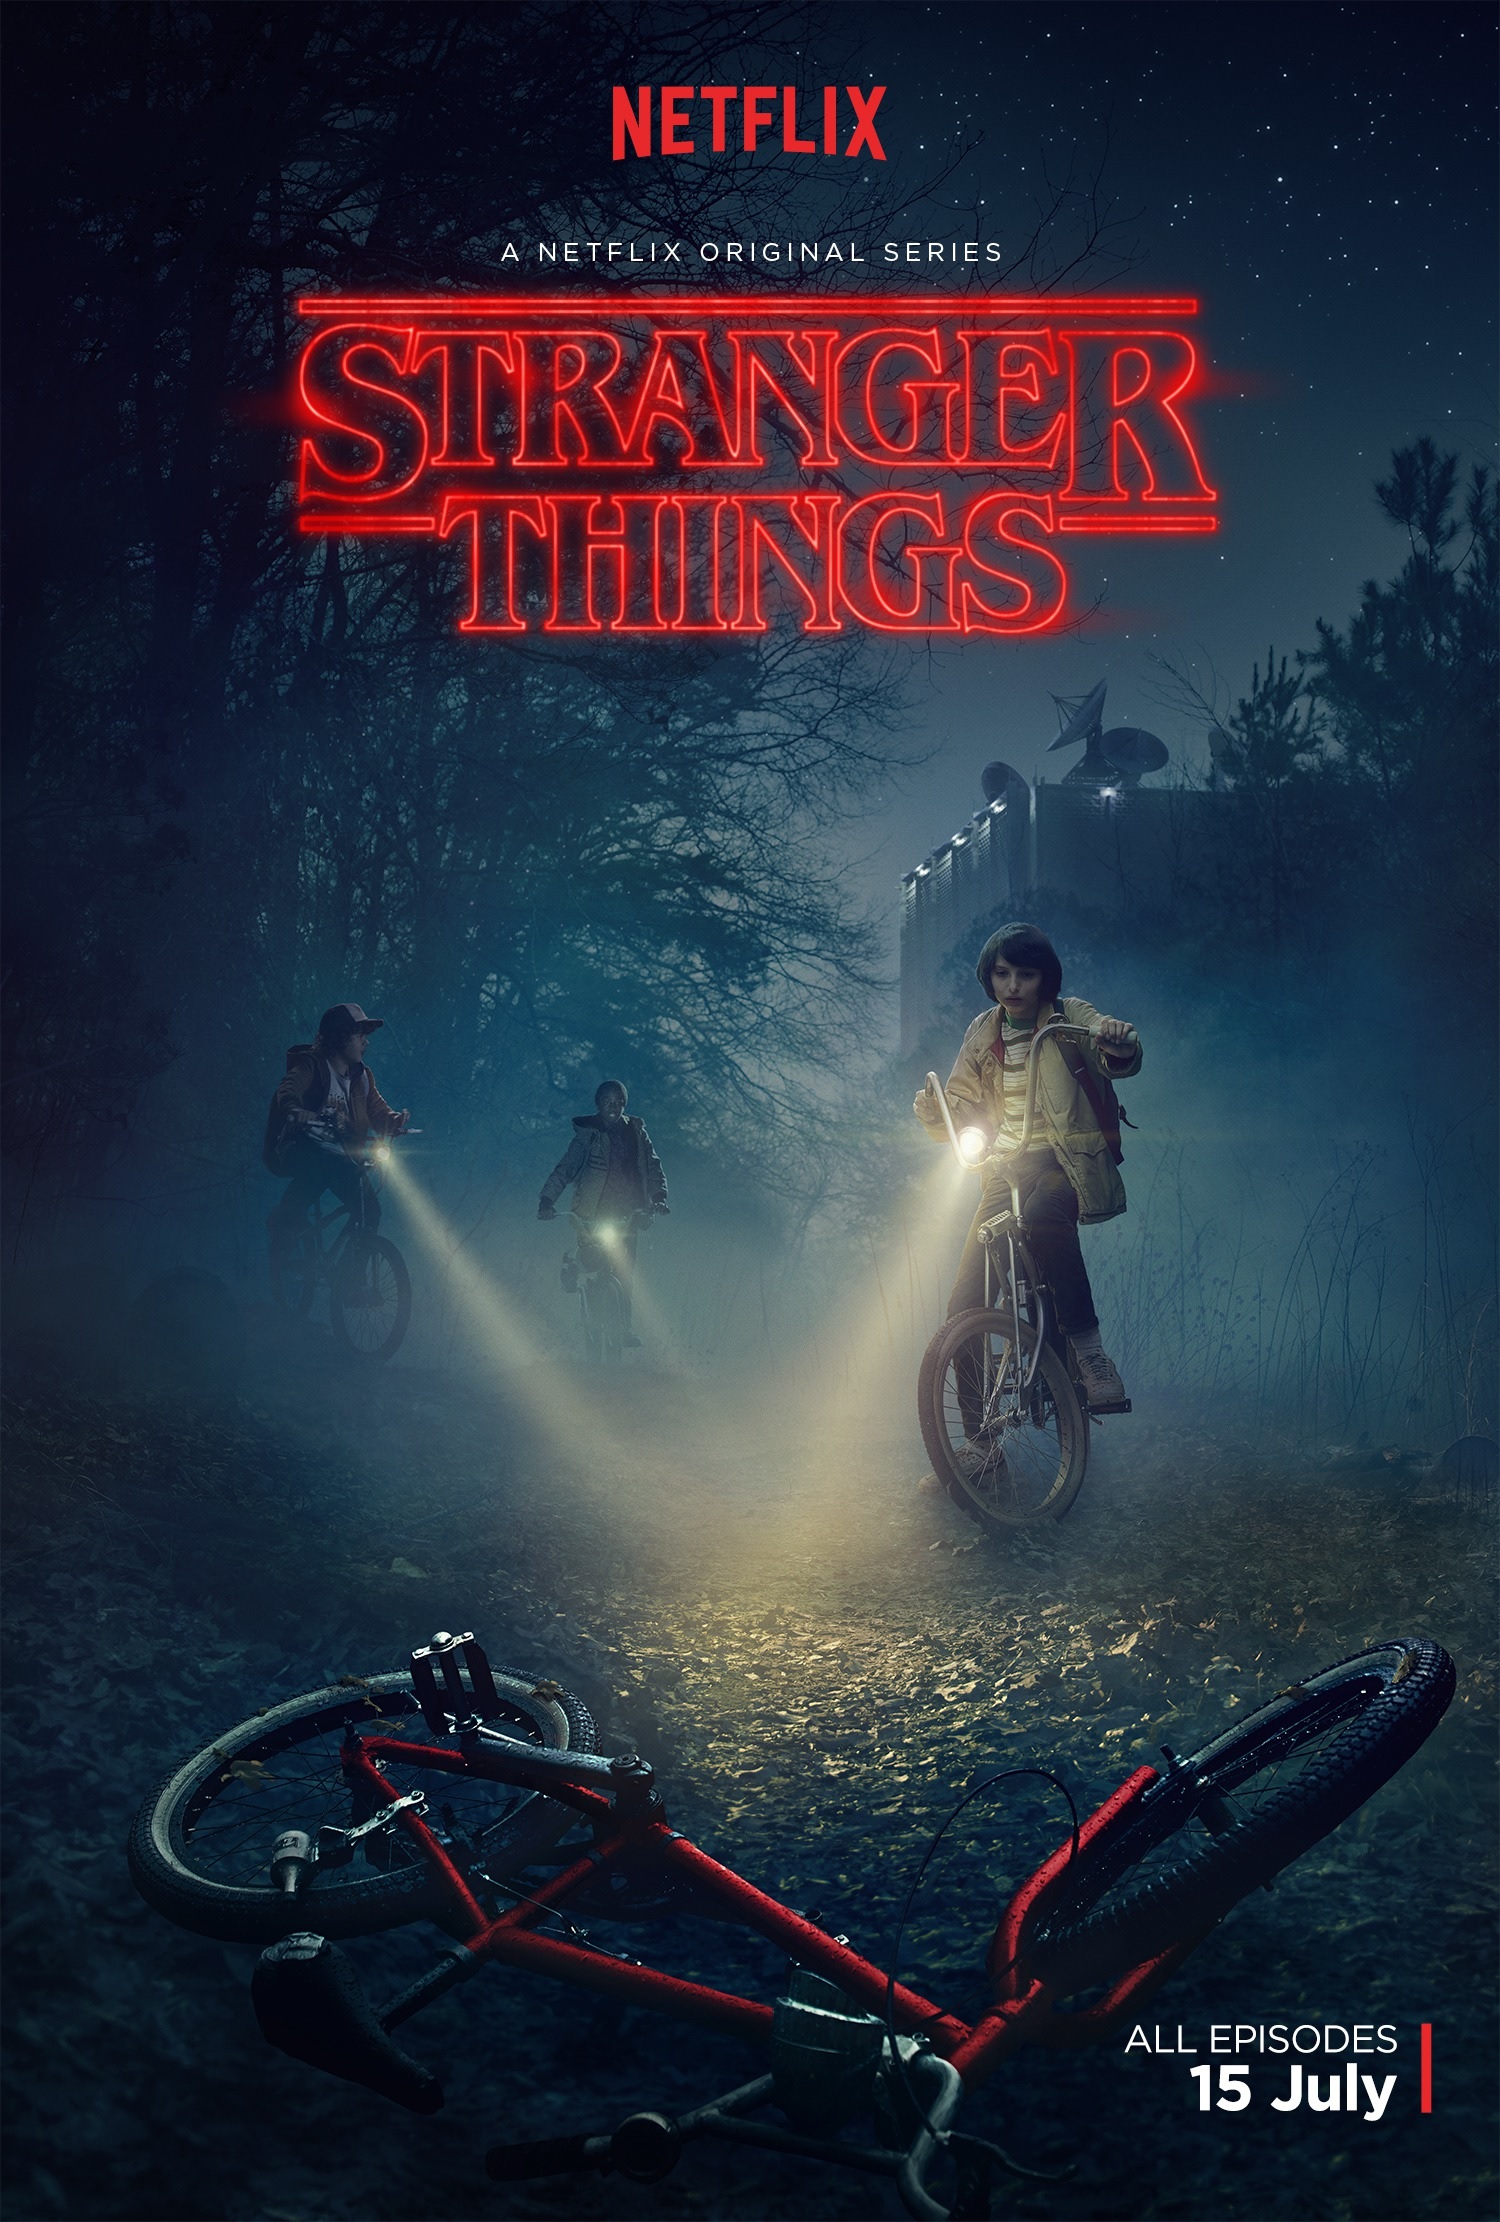 Stranger Things (season 1) - Wikipedia